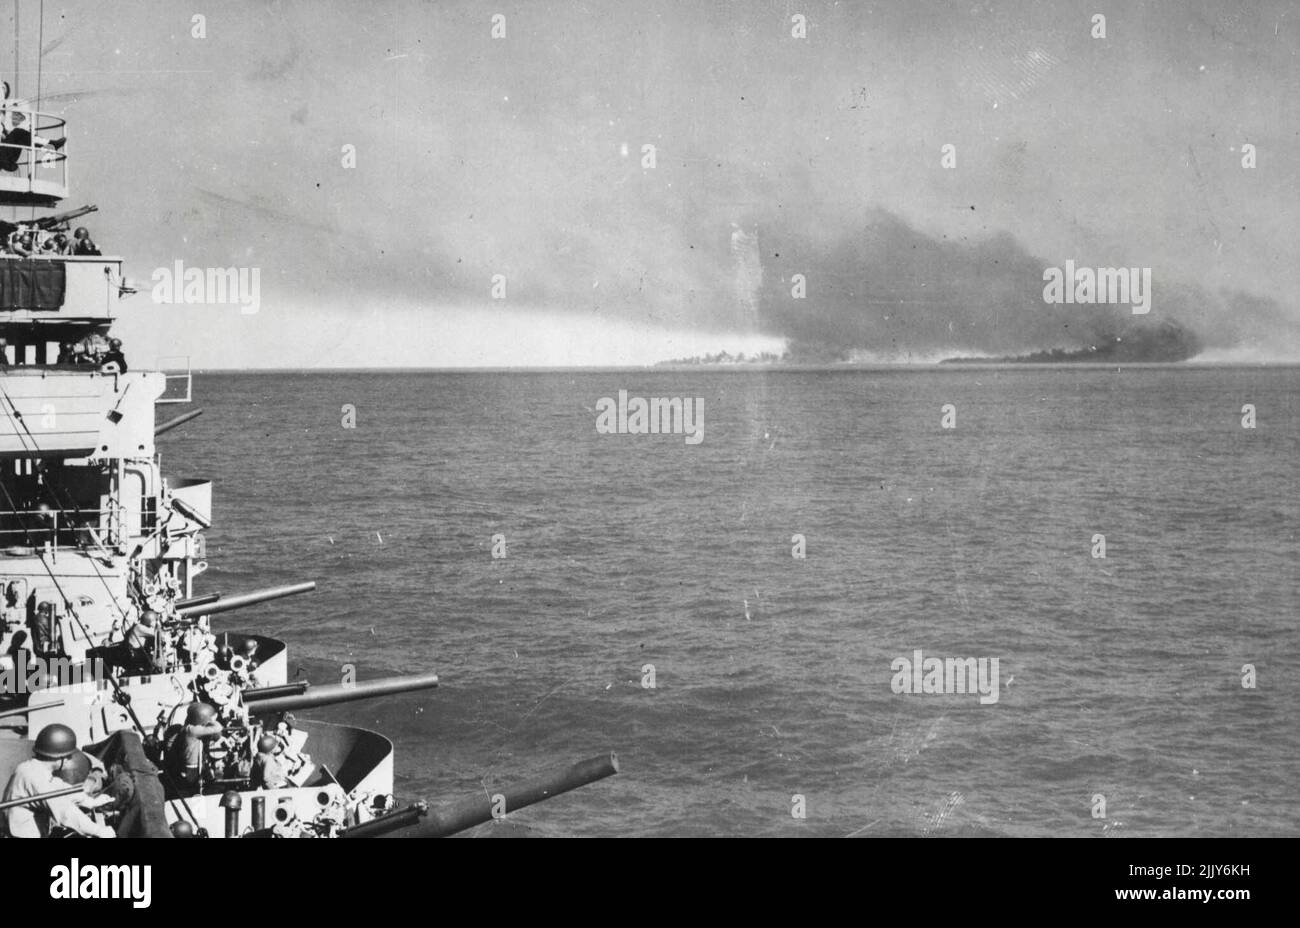 Les forces navales américaines de l'aide alliés des lantages en Sicile -- la fumée s'élève des installations de l'axe en feu sur la rive à Livata, en Sicile, à la suite d'un bombardement par le croiseur américain (à gauche) d'où cette photo a été prise, et d'autres navires de guerre alliés, à mesure que les débarquements initiaux d'invasion ont commencé. Plus de 1 500 navires de la Marine américaine, de la taille des croiseurs aux petits embargos et habités par 40 000 officiers et hommes, ont été parmi les 3 000 navires alliés qui ont participé aux gigantesques opérations amphibies. 29 août 1943. Banque D'Images